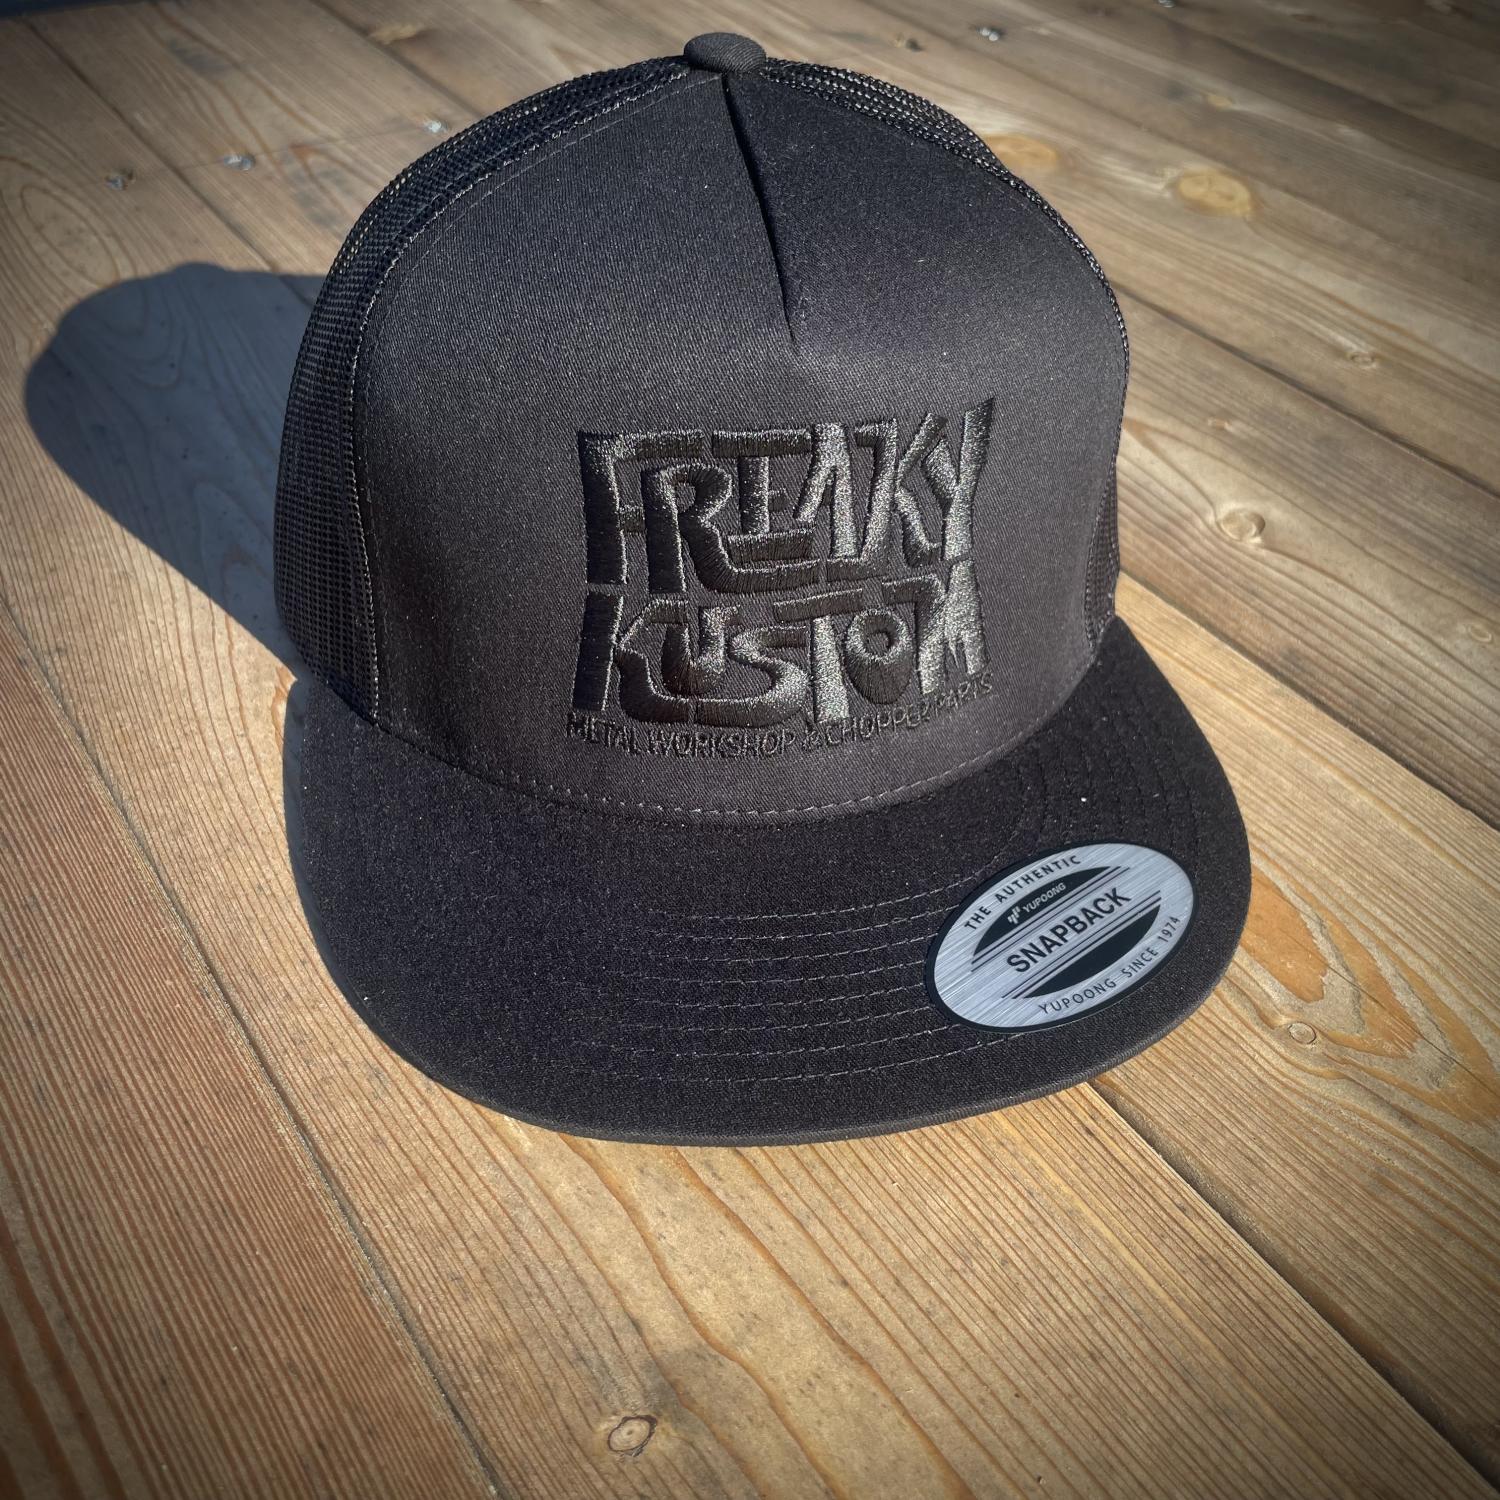 Freaky Kustom - Trucker Cap Black On Black